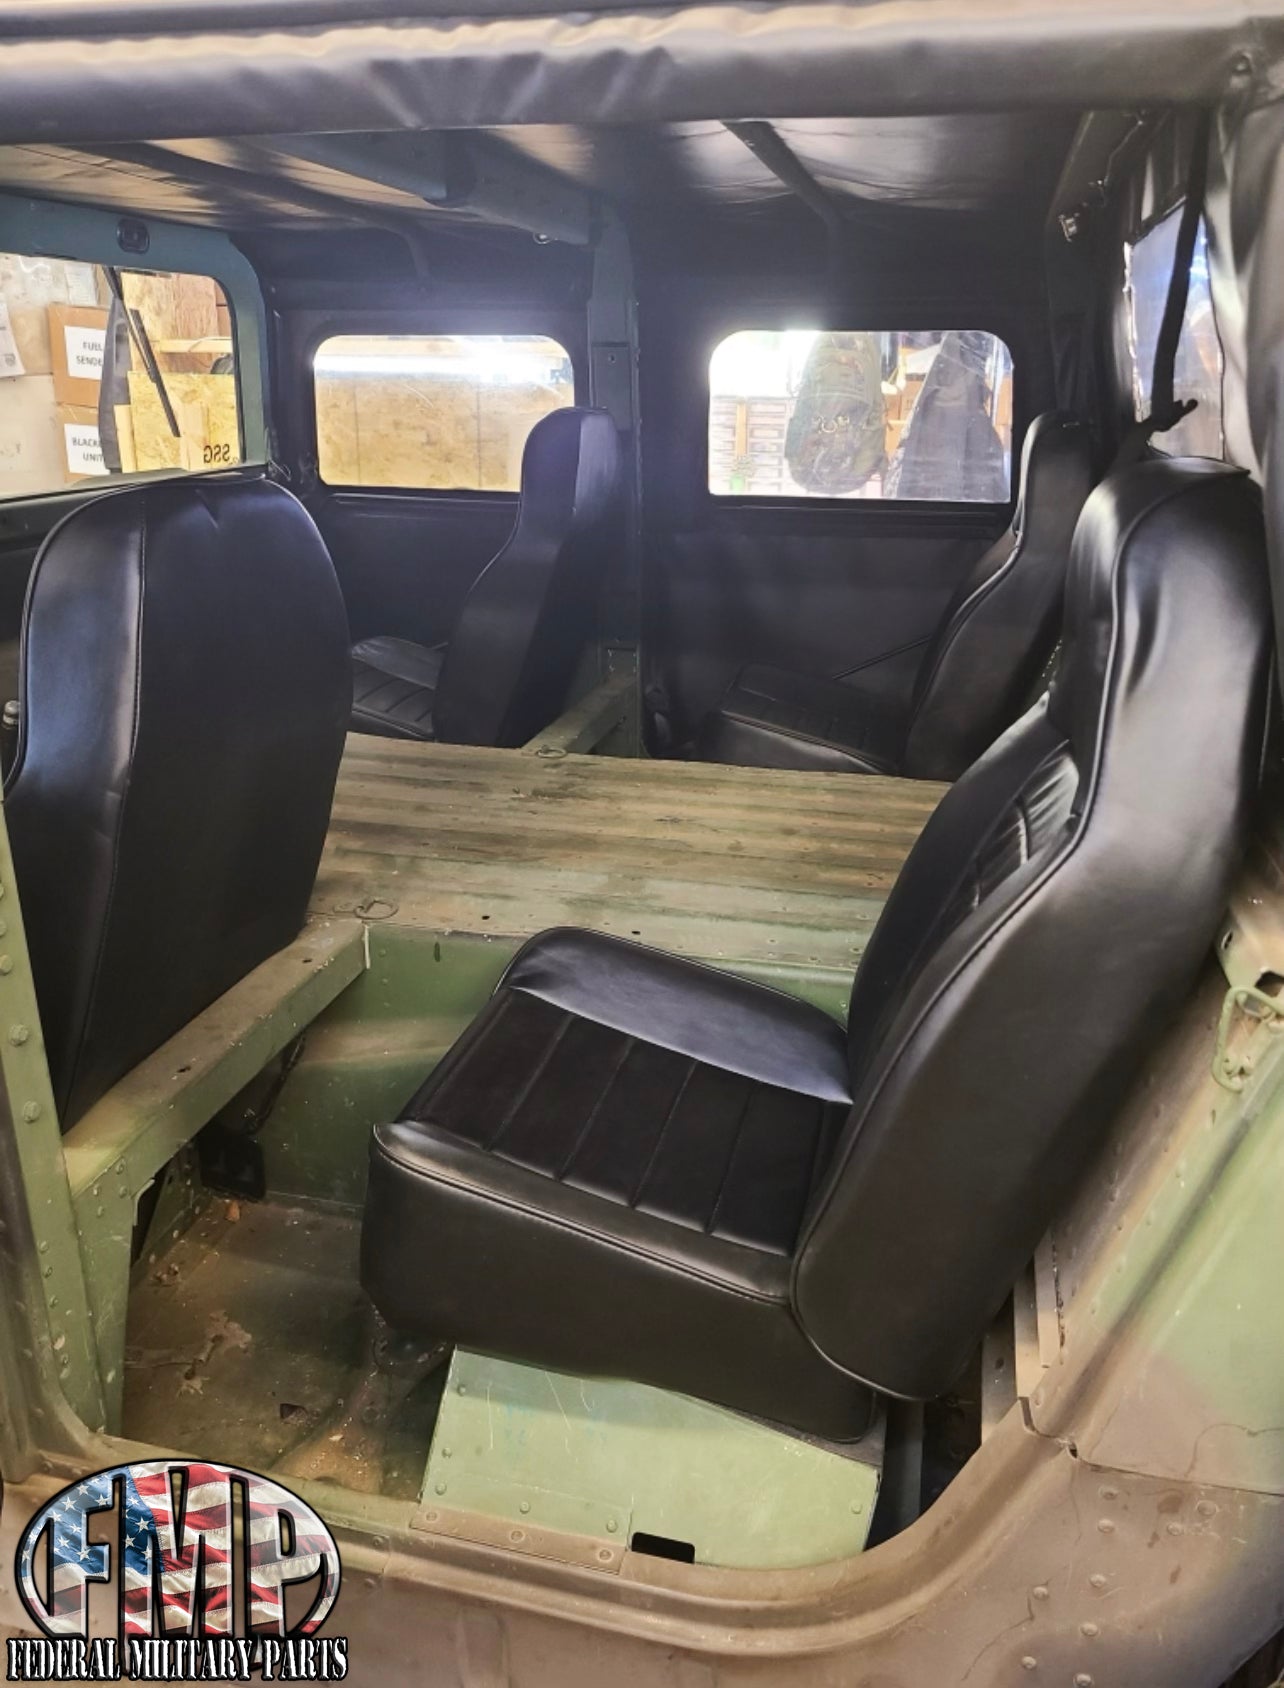 New Humvee Seat Sièges HMMWV pour votre véhicule militaire - Simple, paire ou ensemble de quatre